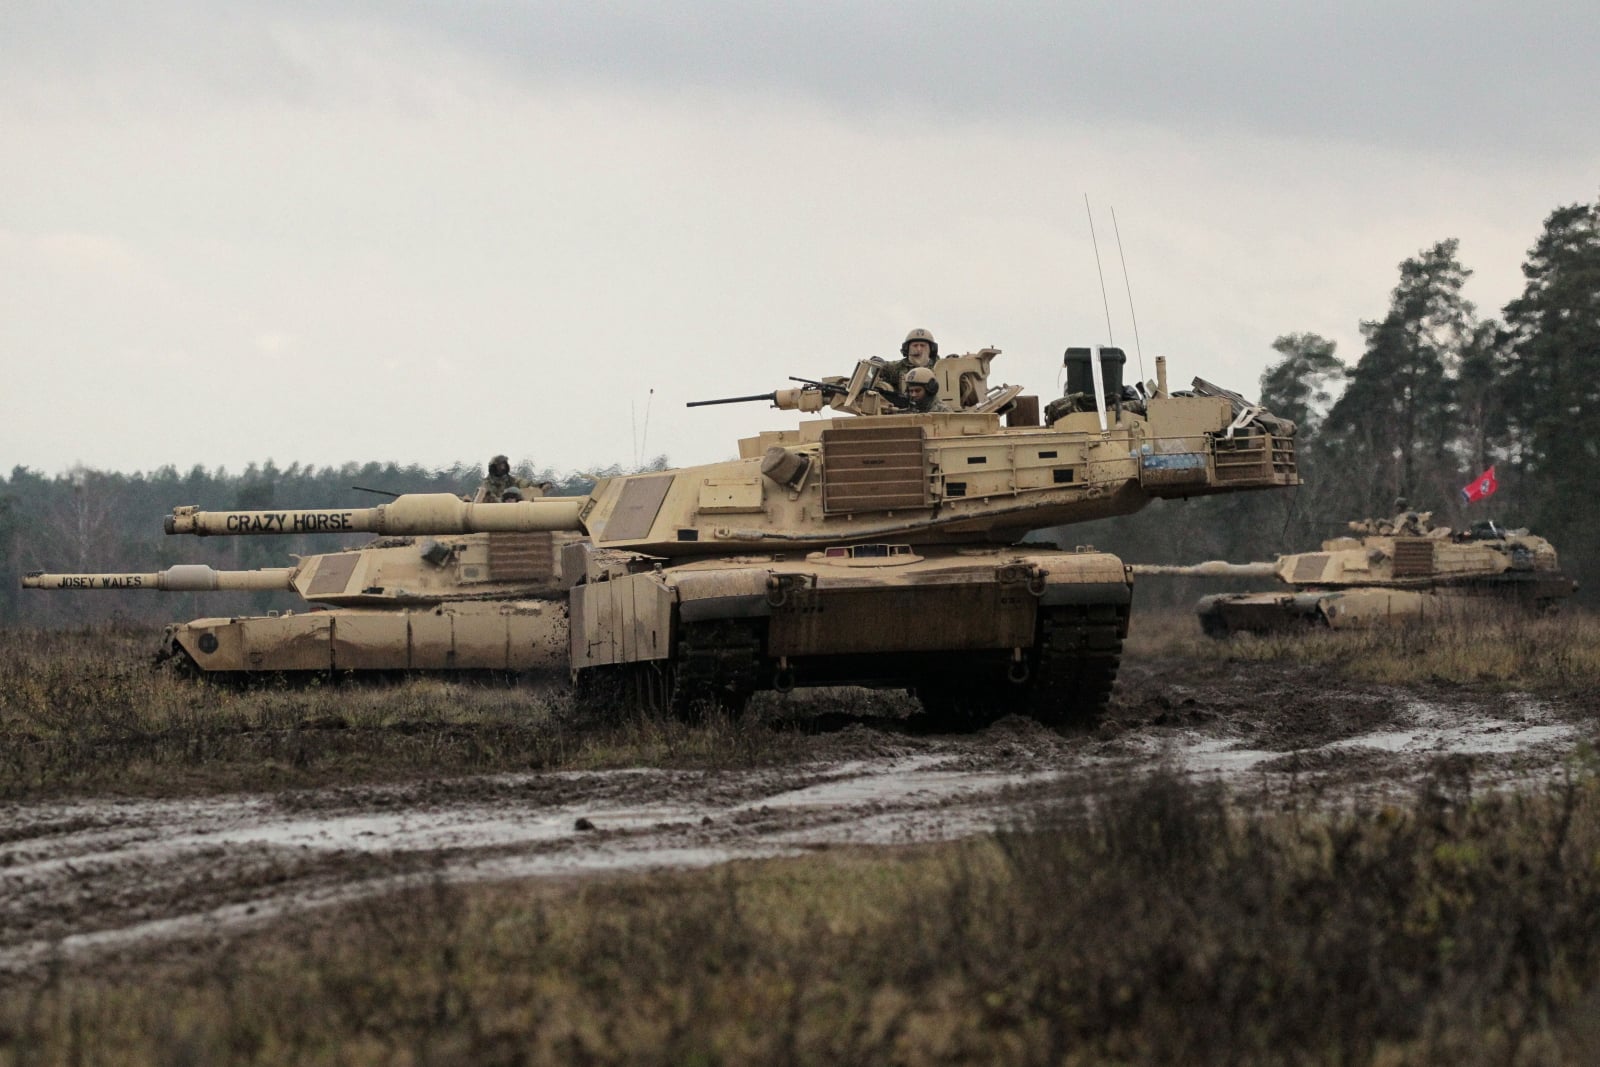 Żołnierze amerykańscy w czołgach M1 Abrams, podczas taktycznego manewru luzowania, na poligonie OSPWL Orzysz. 